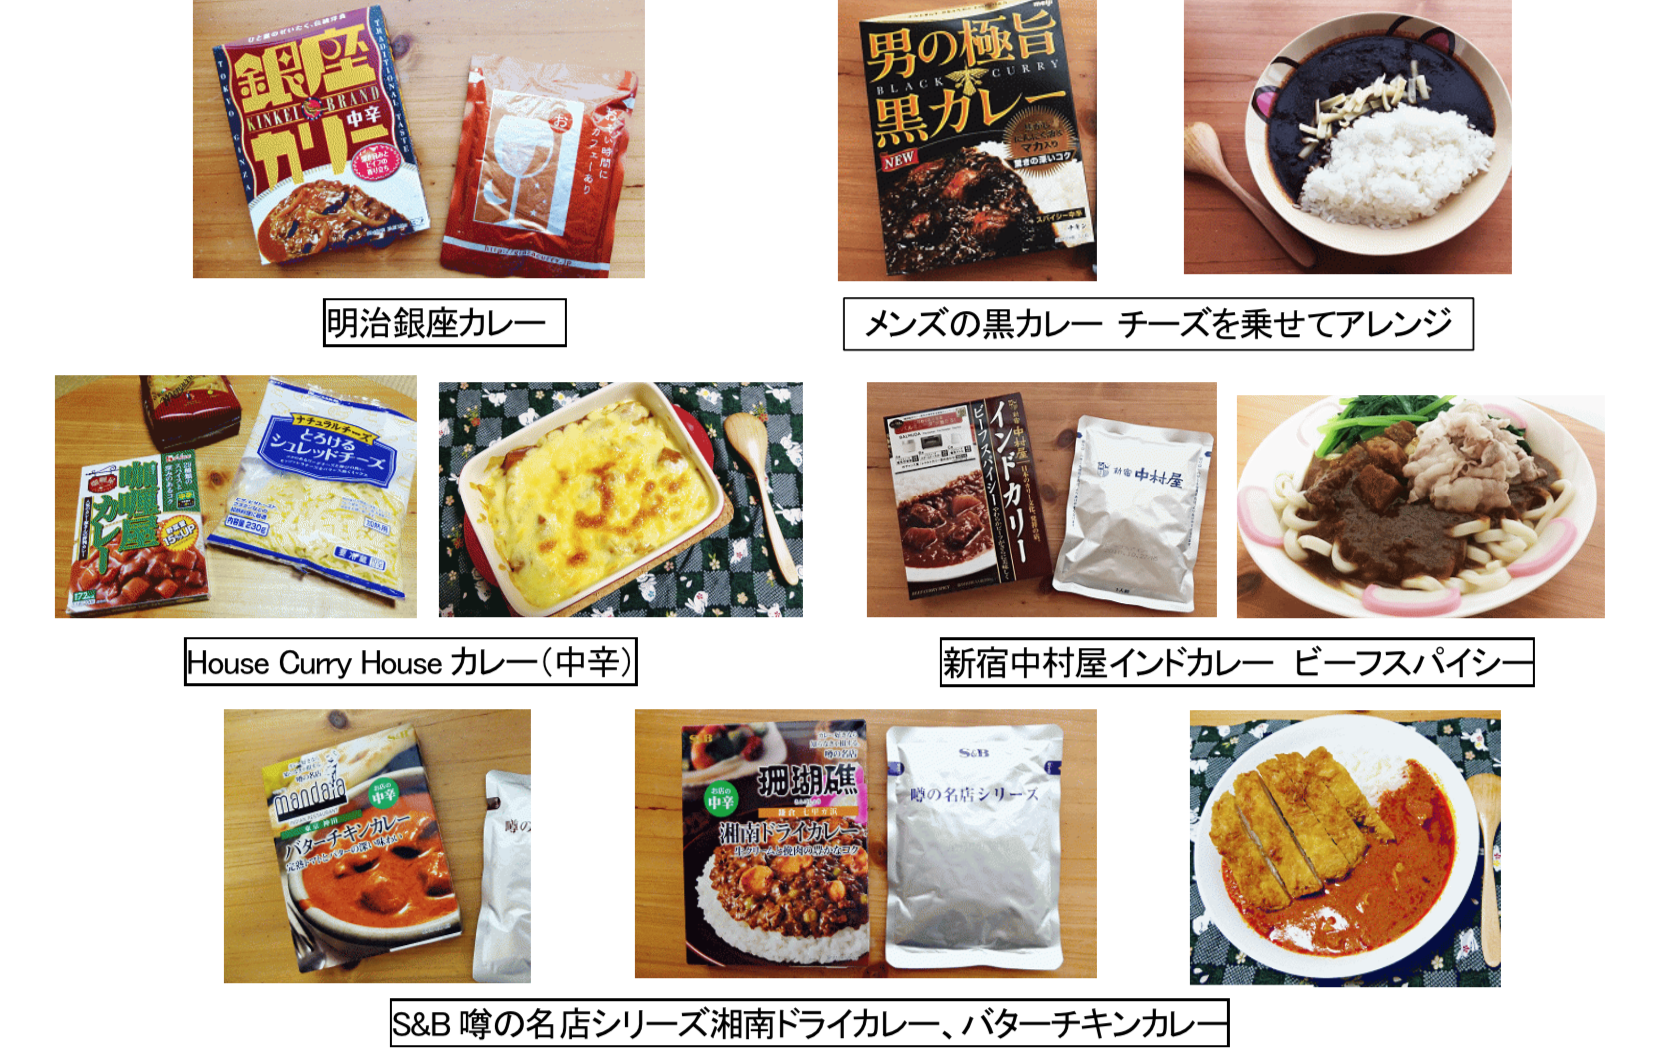 ラクレットチーズを身近なモノに！
「いきなりラクレット」下北沢に2月9日プレオープン！